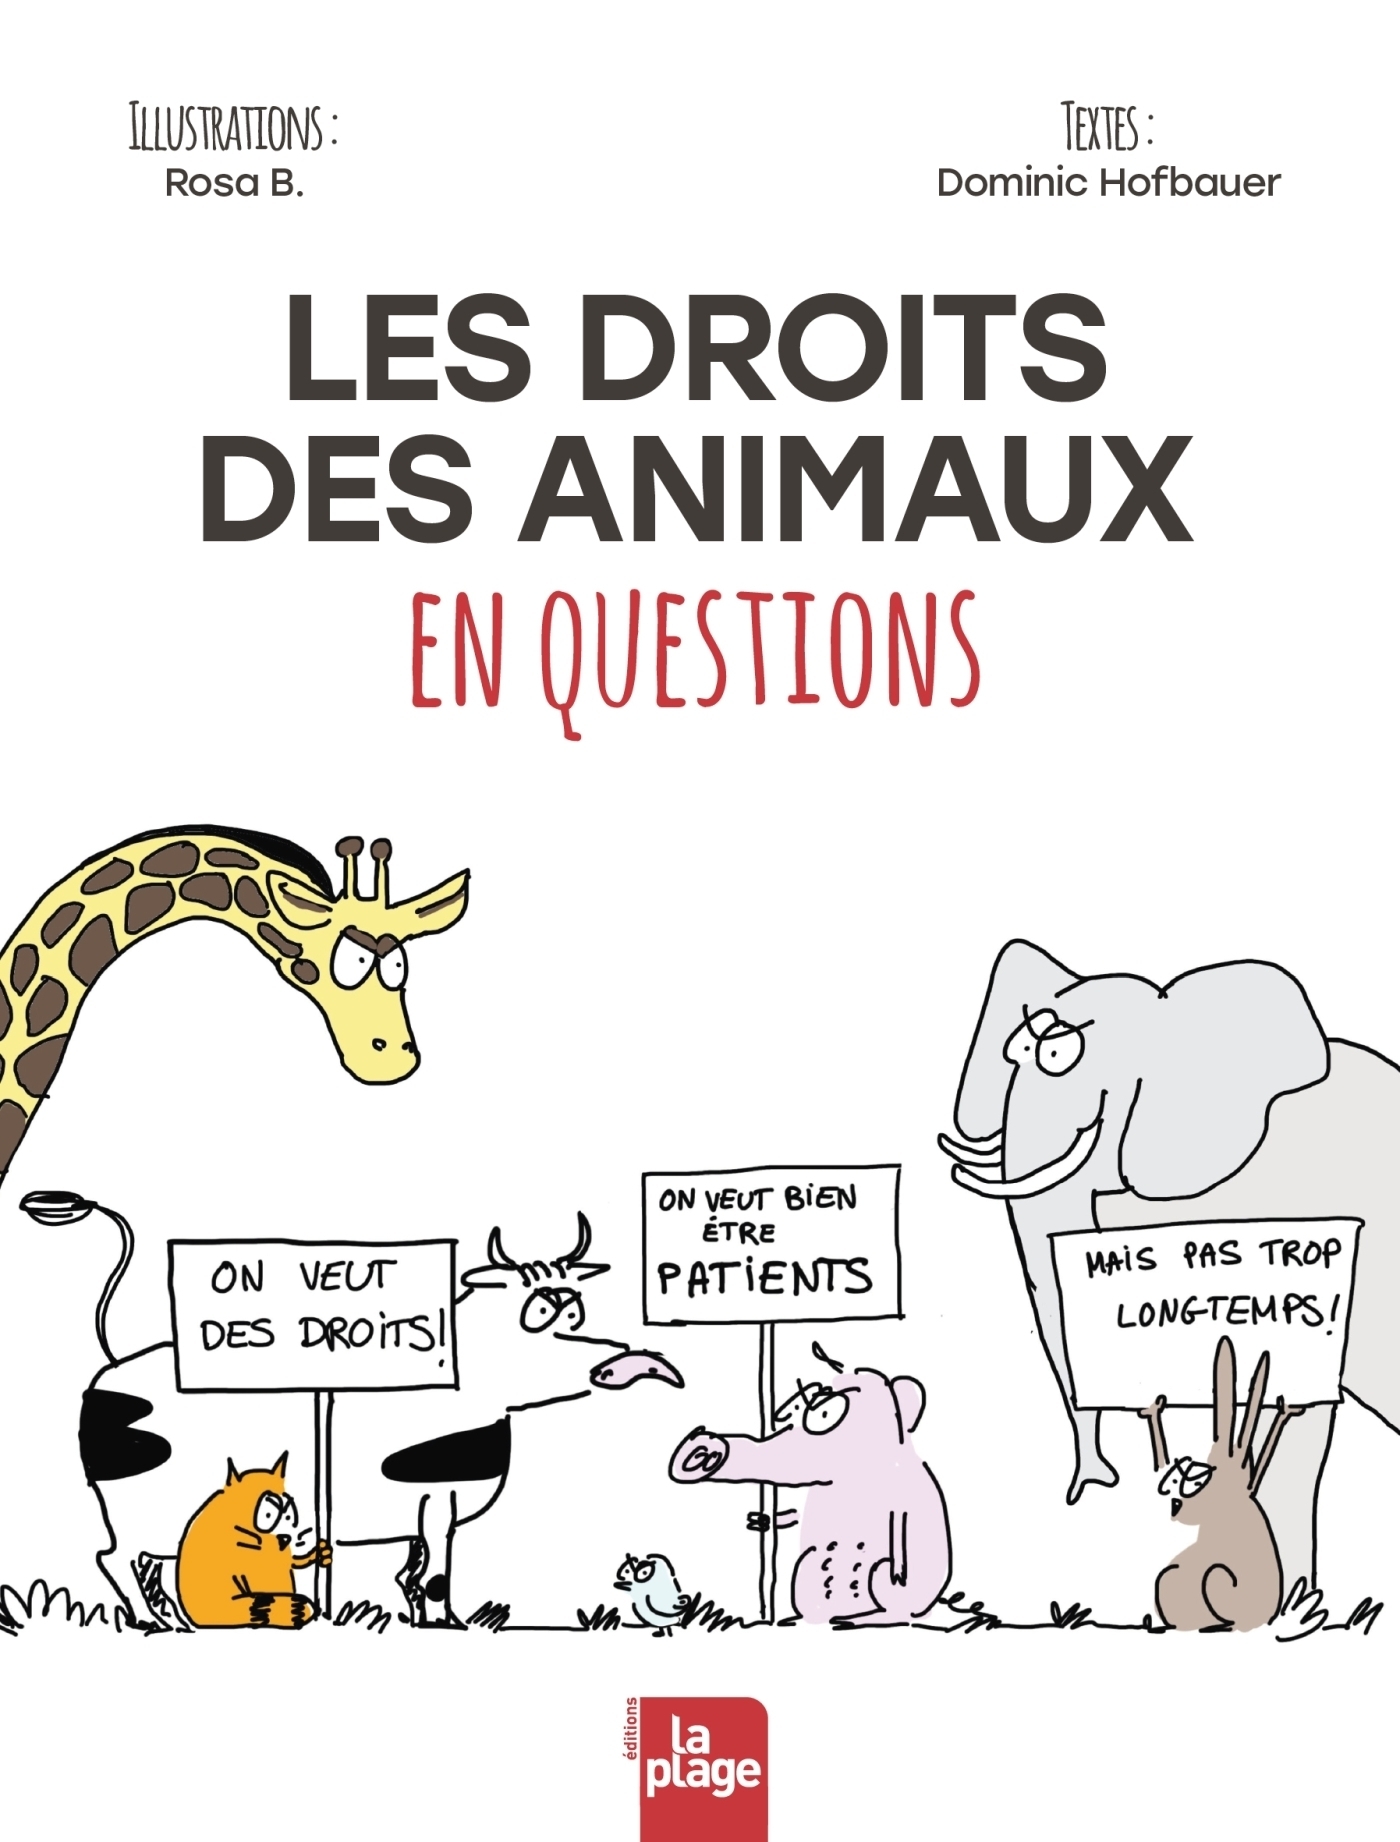 Les droits des animaux en questions - - Dominic Hofbauer (EAN13 : 9782383380962) | Editions La Plage